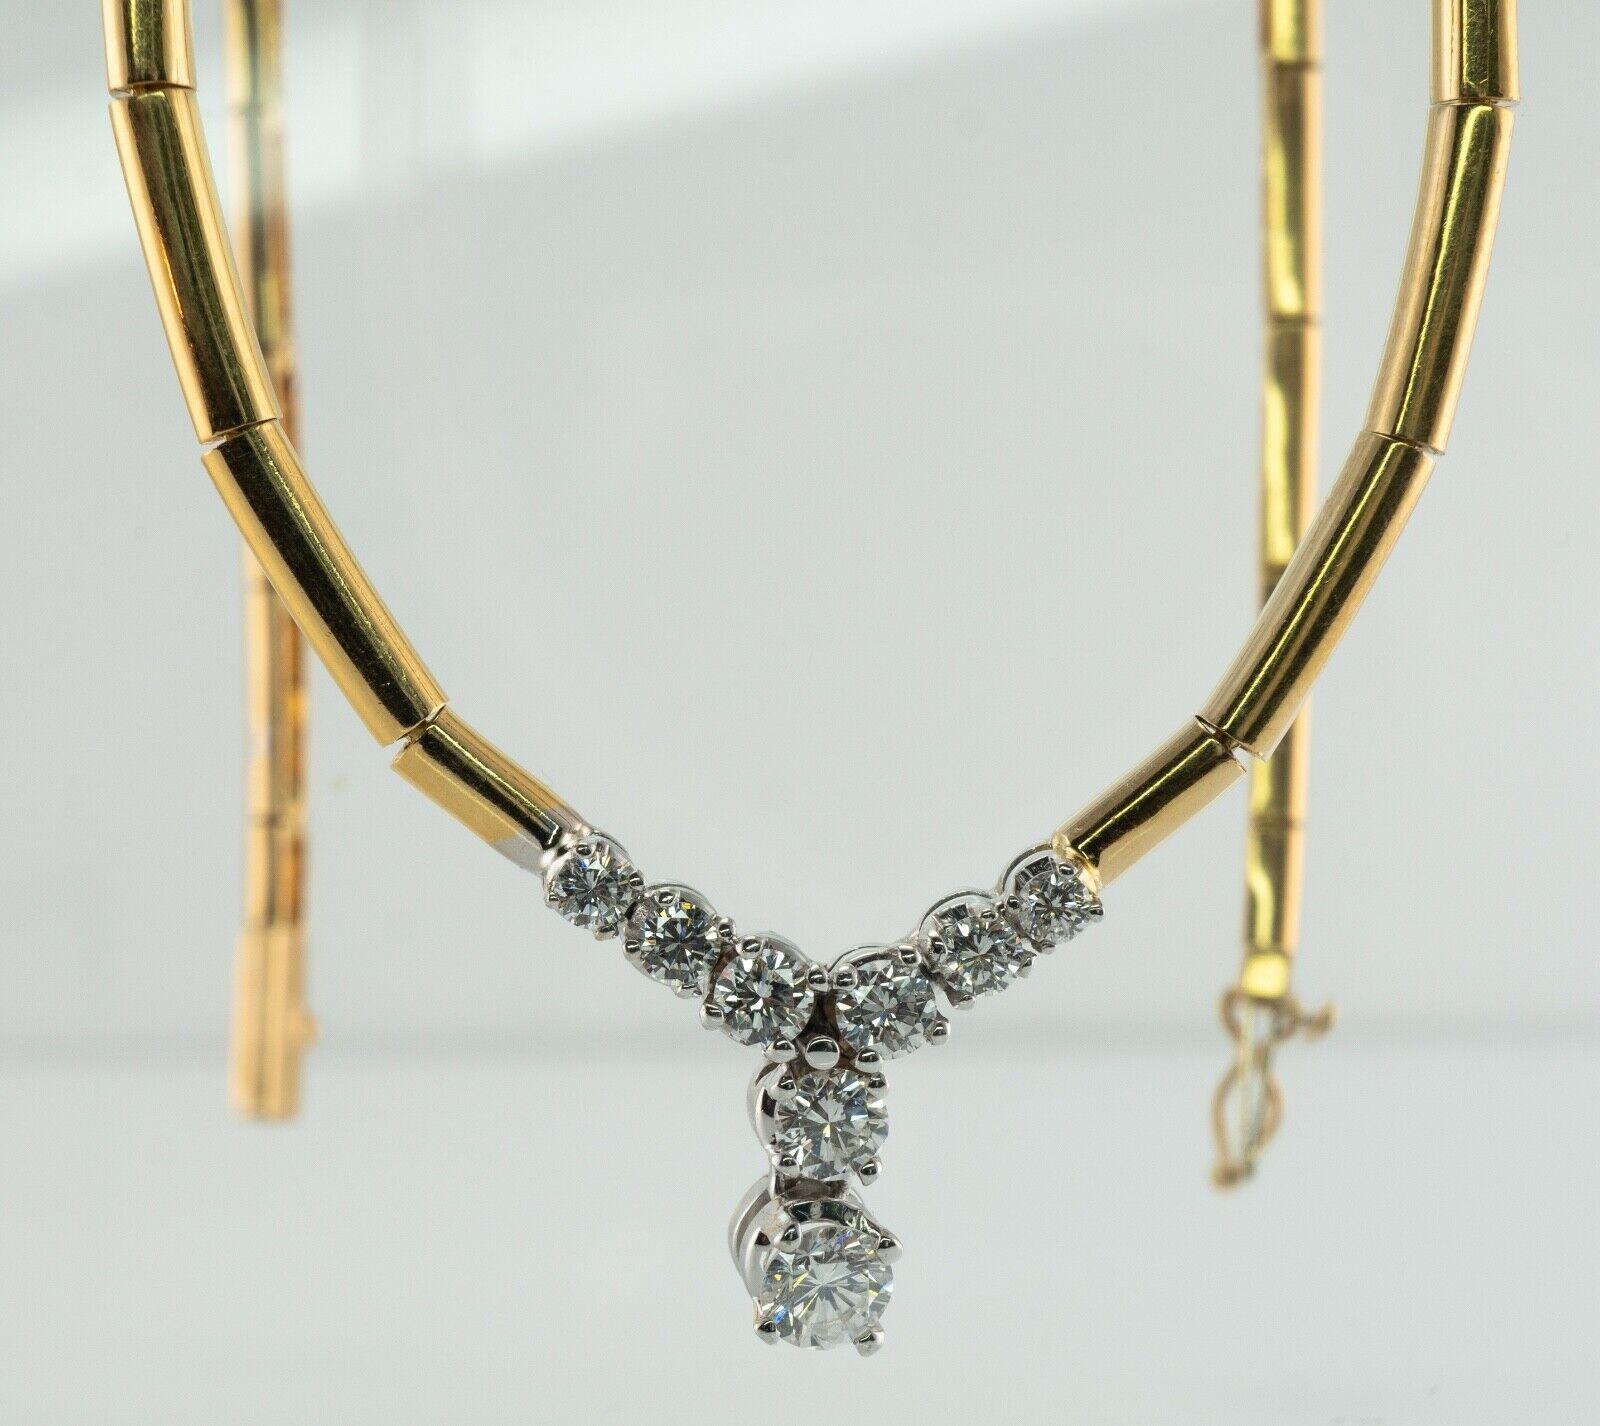 Collier de diamants en or 18K Choker .91 TDW V-Shape

Ce magnifique collier de succession est finement réalisé en or jaune 18 carats massif et serti de diamants blancs et ardents. 
Huit diamants ronds de taille brillant totalisent 0,91 carat de